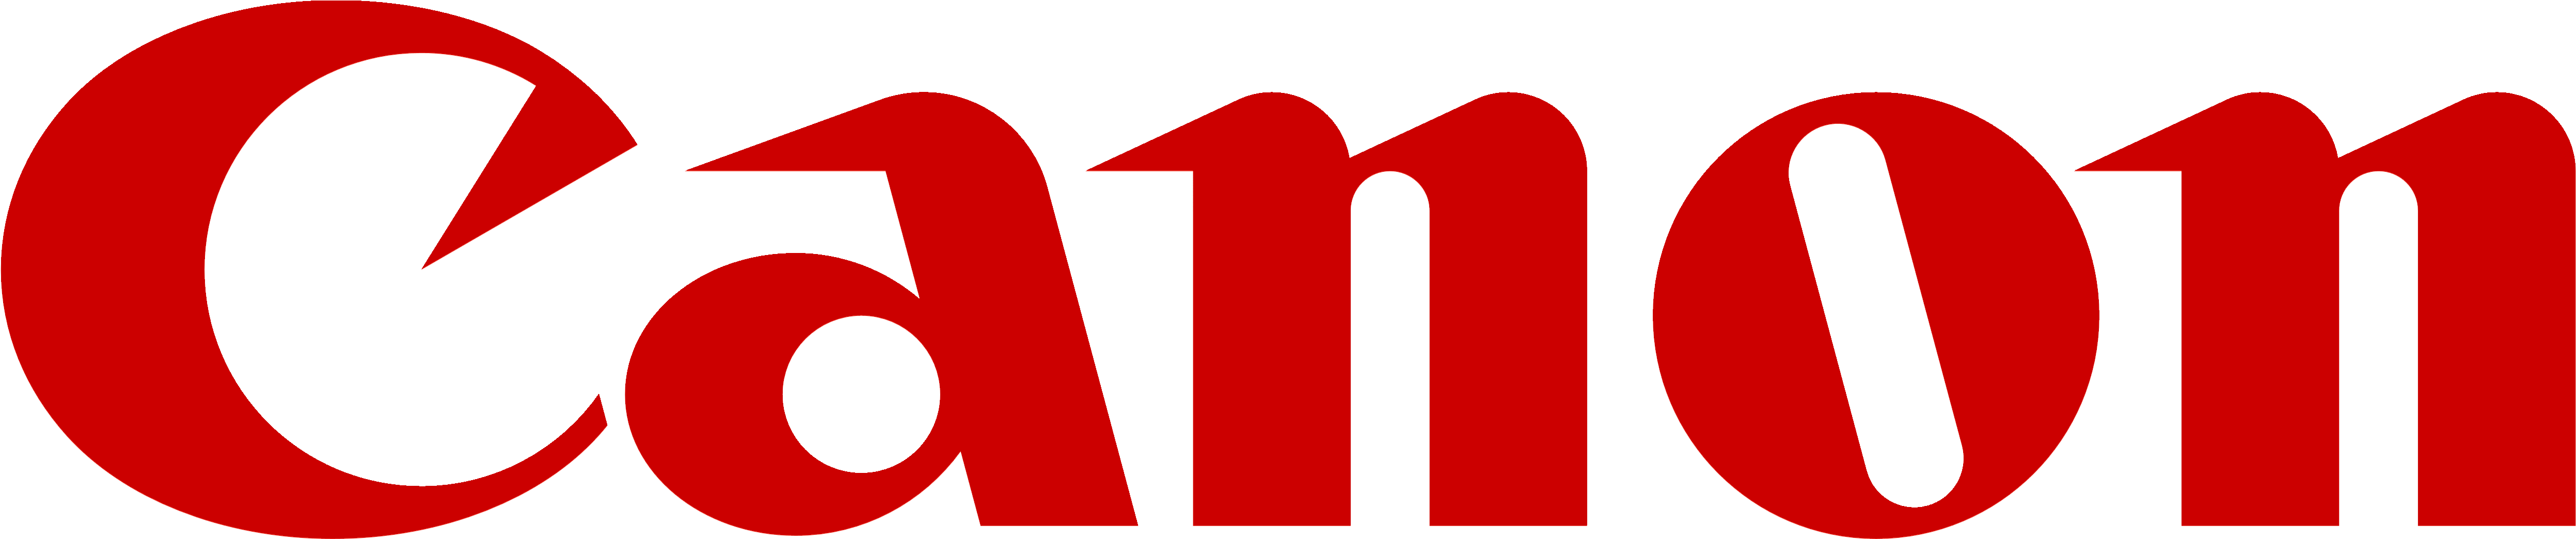 Canon Logo Redon White Background